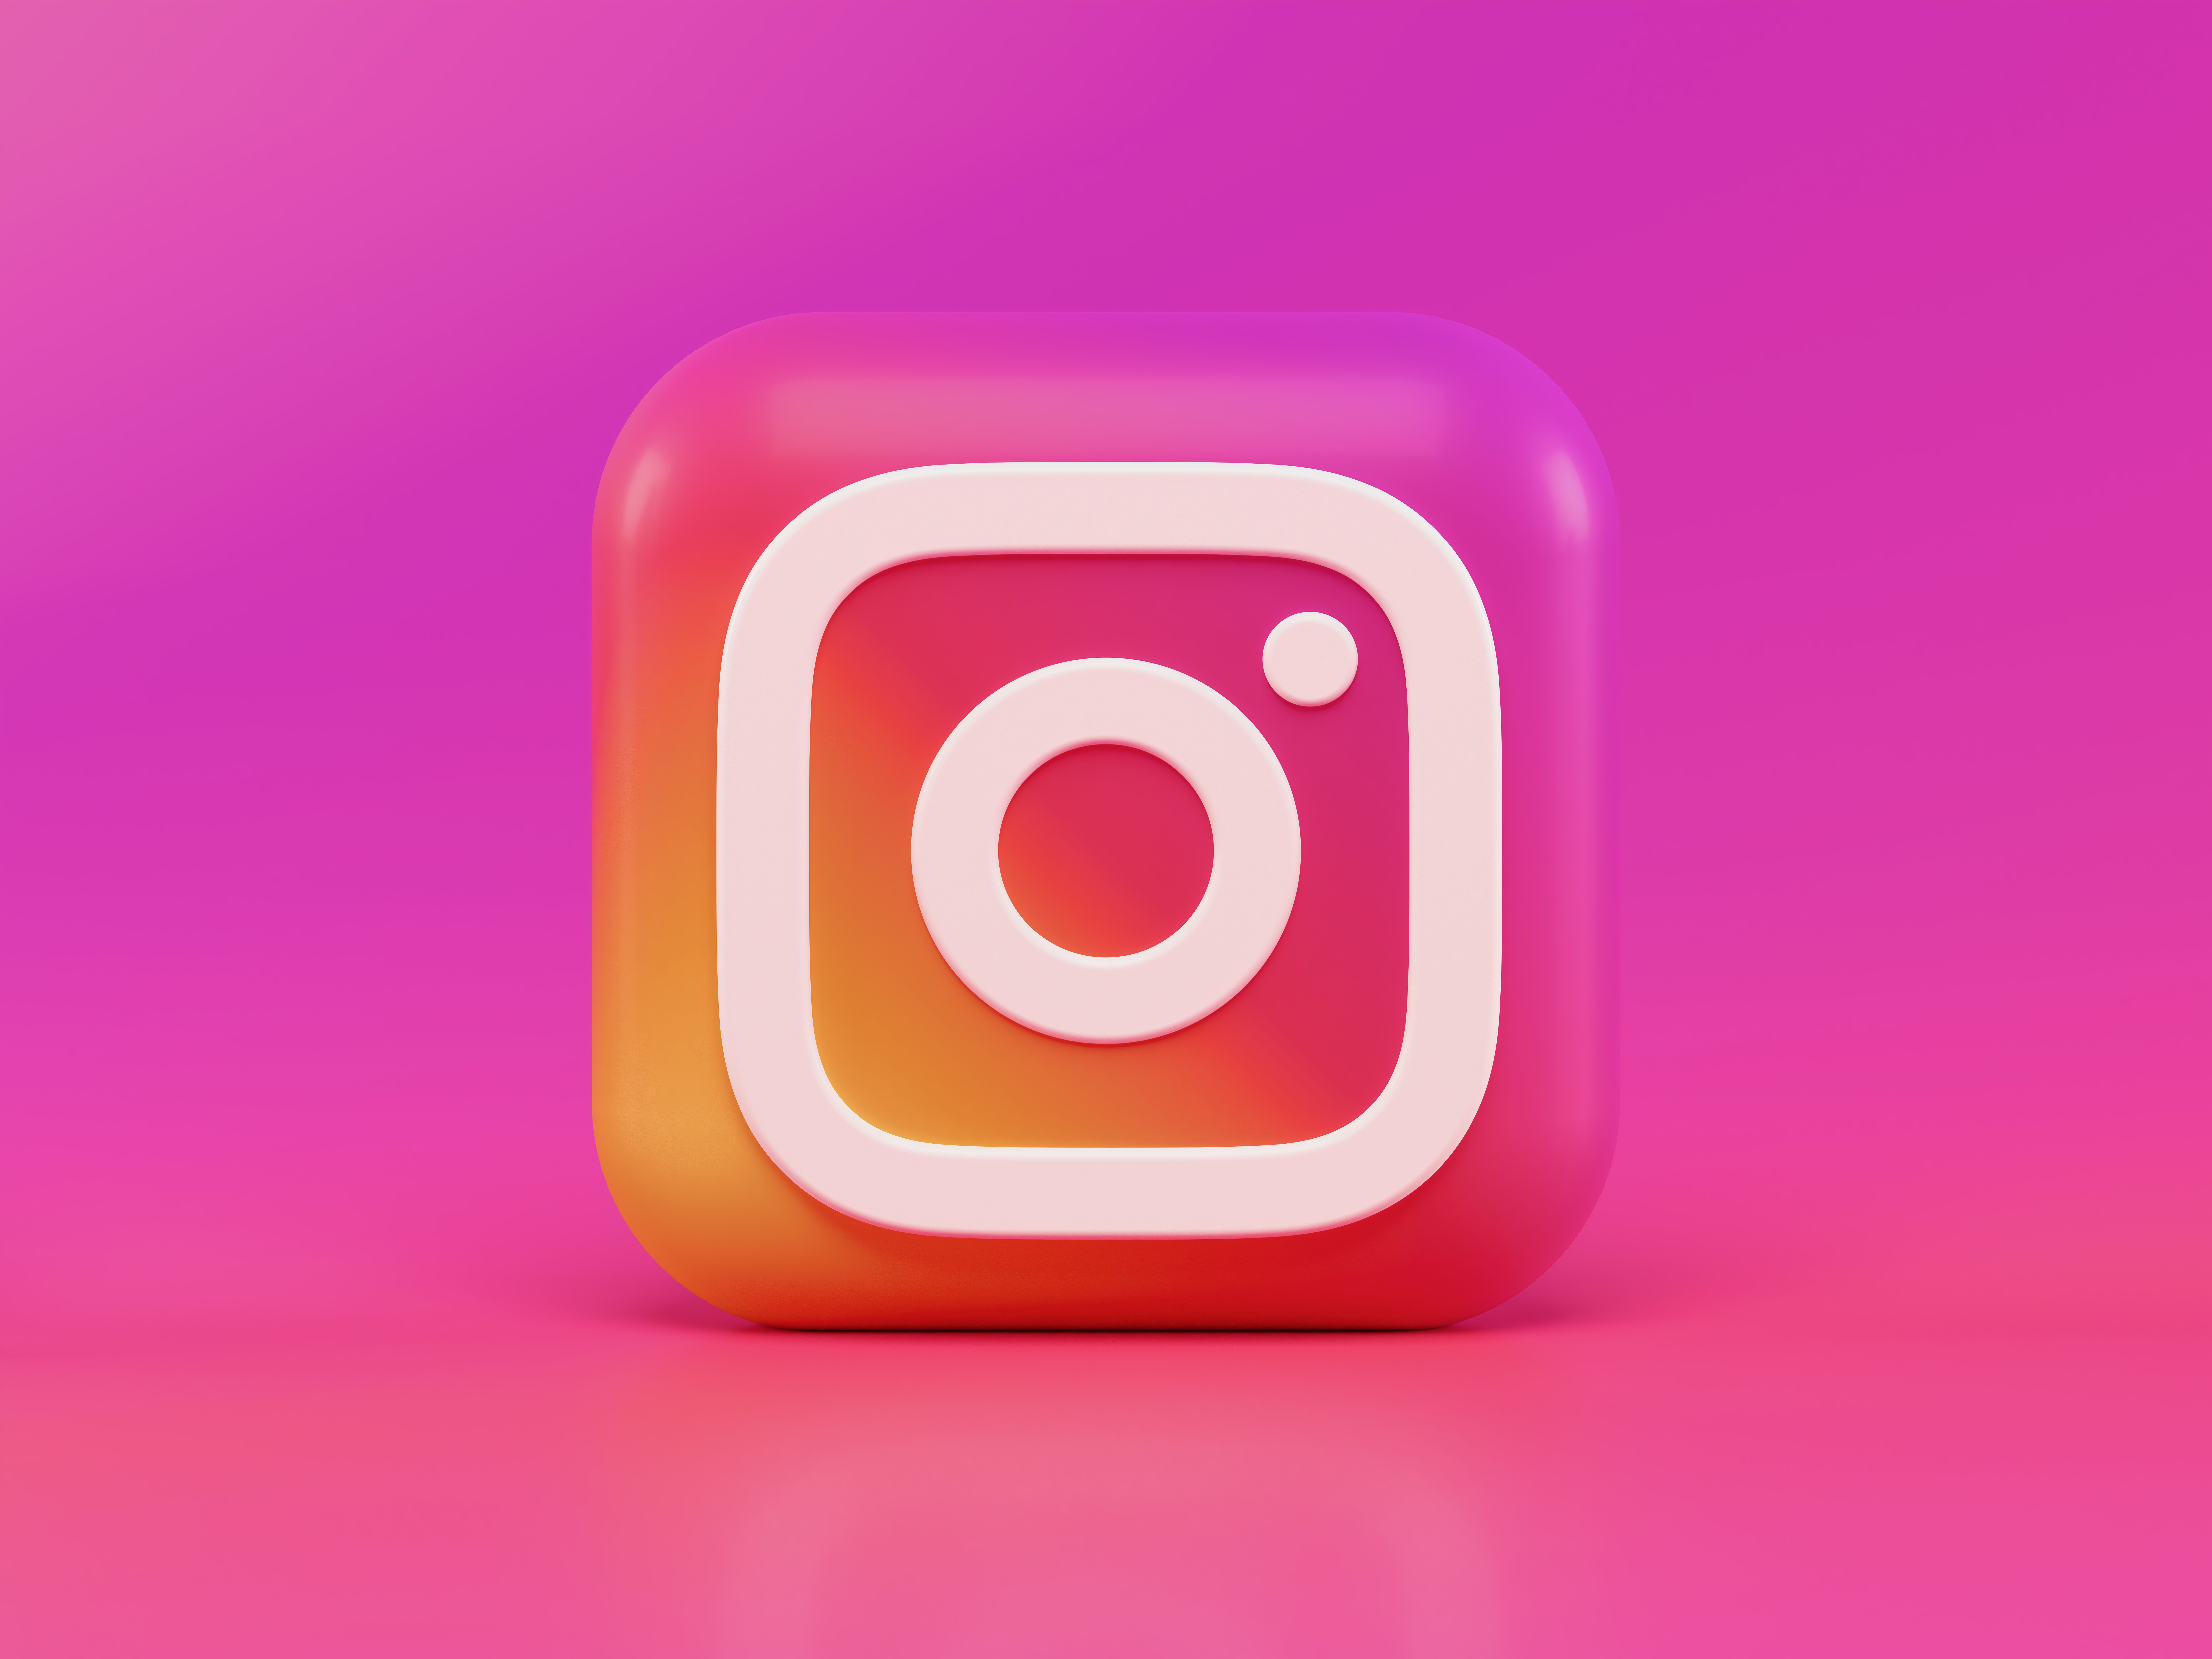 Instagram souhaite miser davantage sur les vidéos que sur les photos